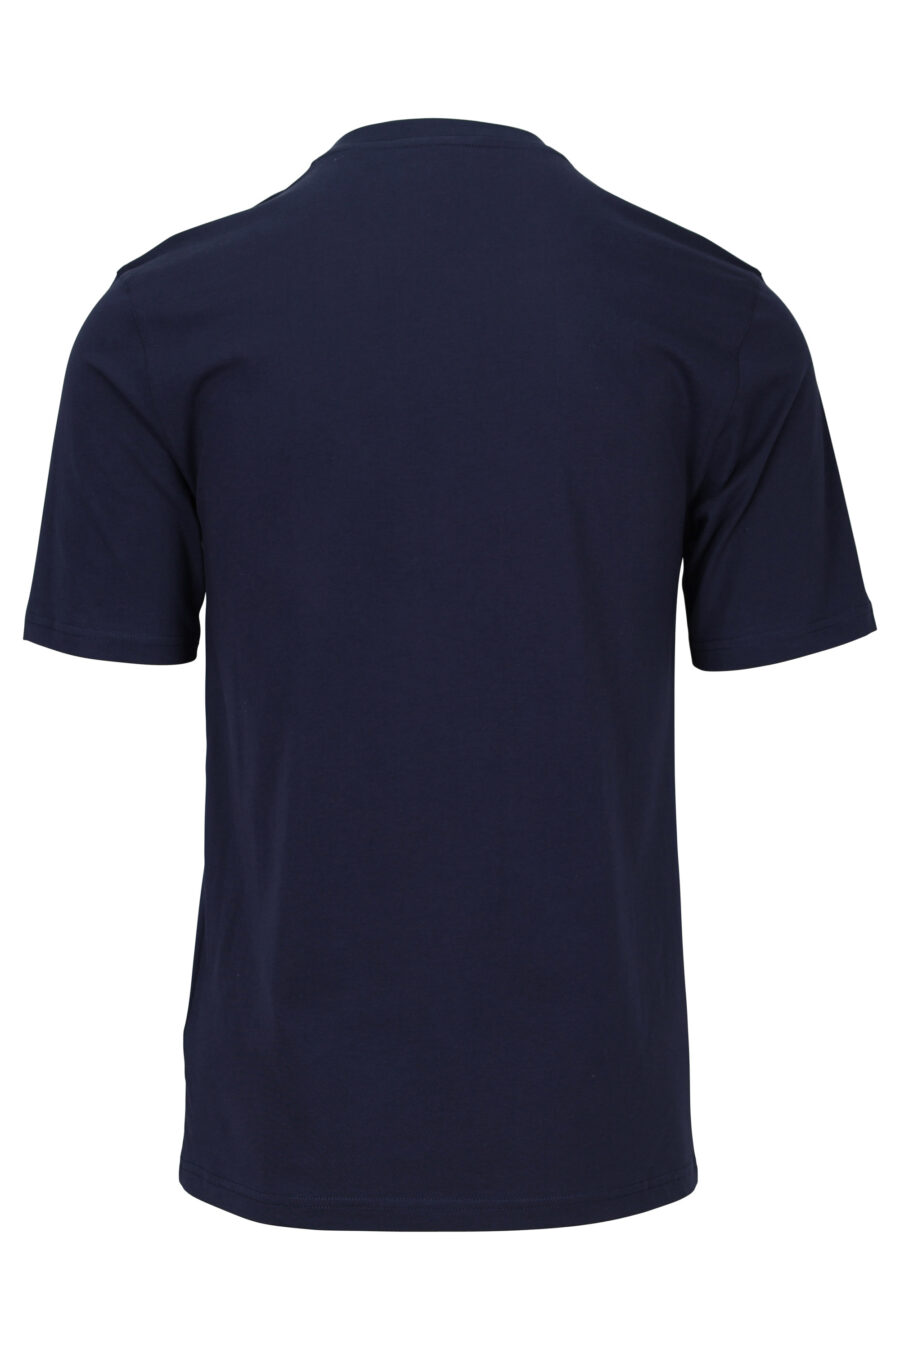 Camiseta azul con minilogo "teddy sastre" - 667113150833 1